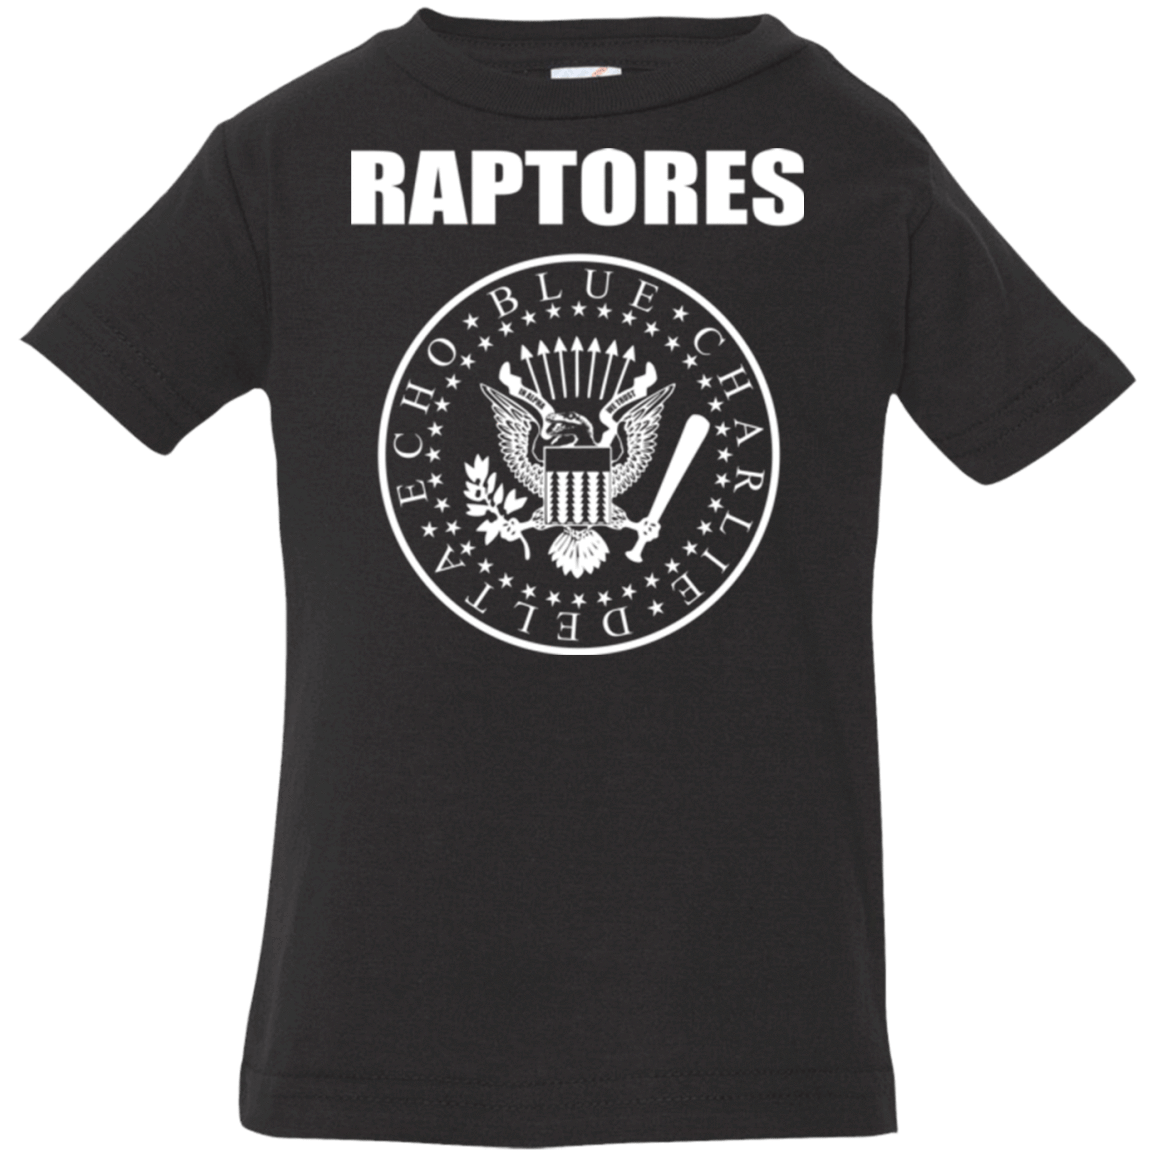 T-Shirts Black / 6 Months Raptores Infant Premium T-Shirt